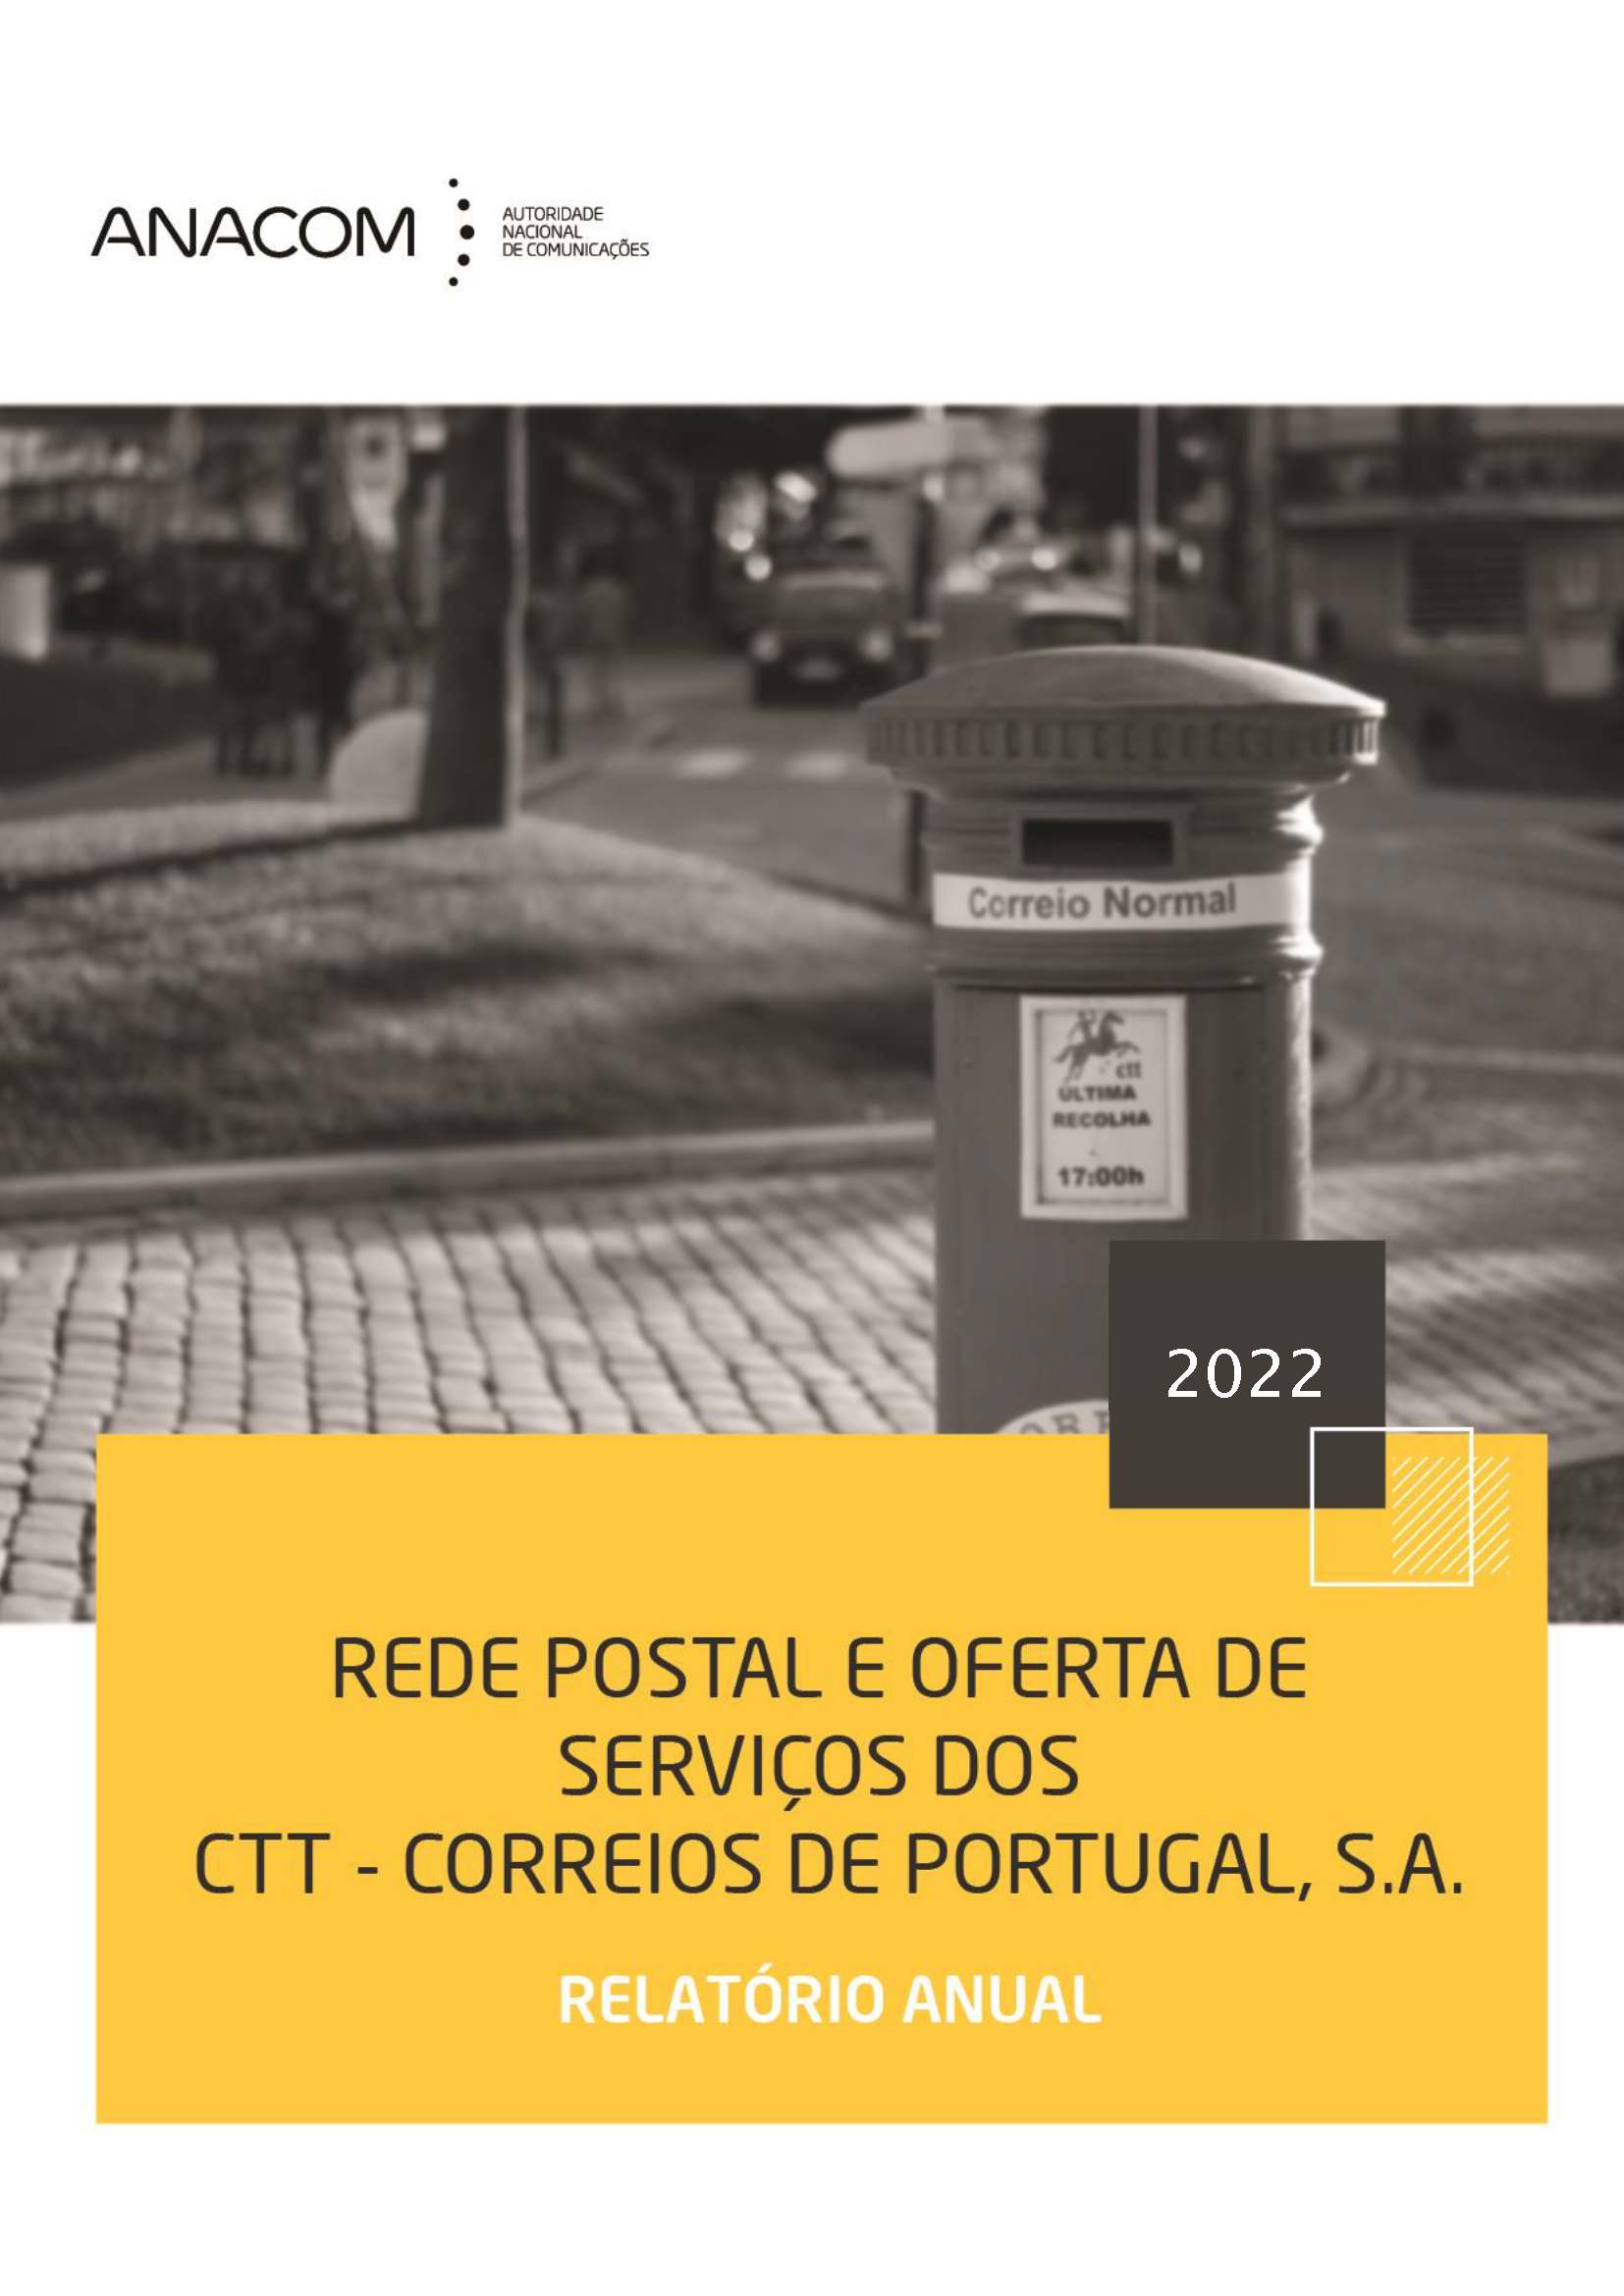 Rede postal e oferta de serviços dos CTT - Correios de Portugal em 2022